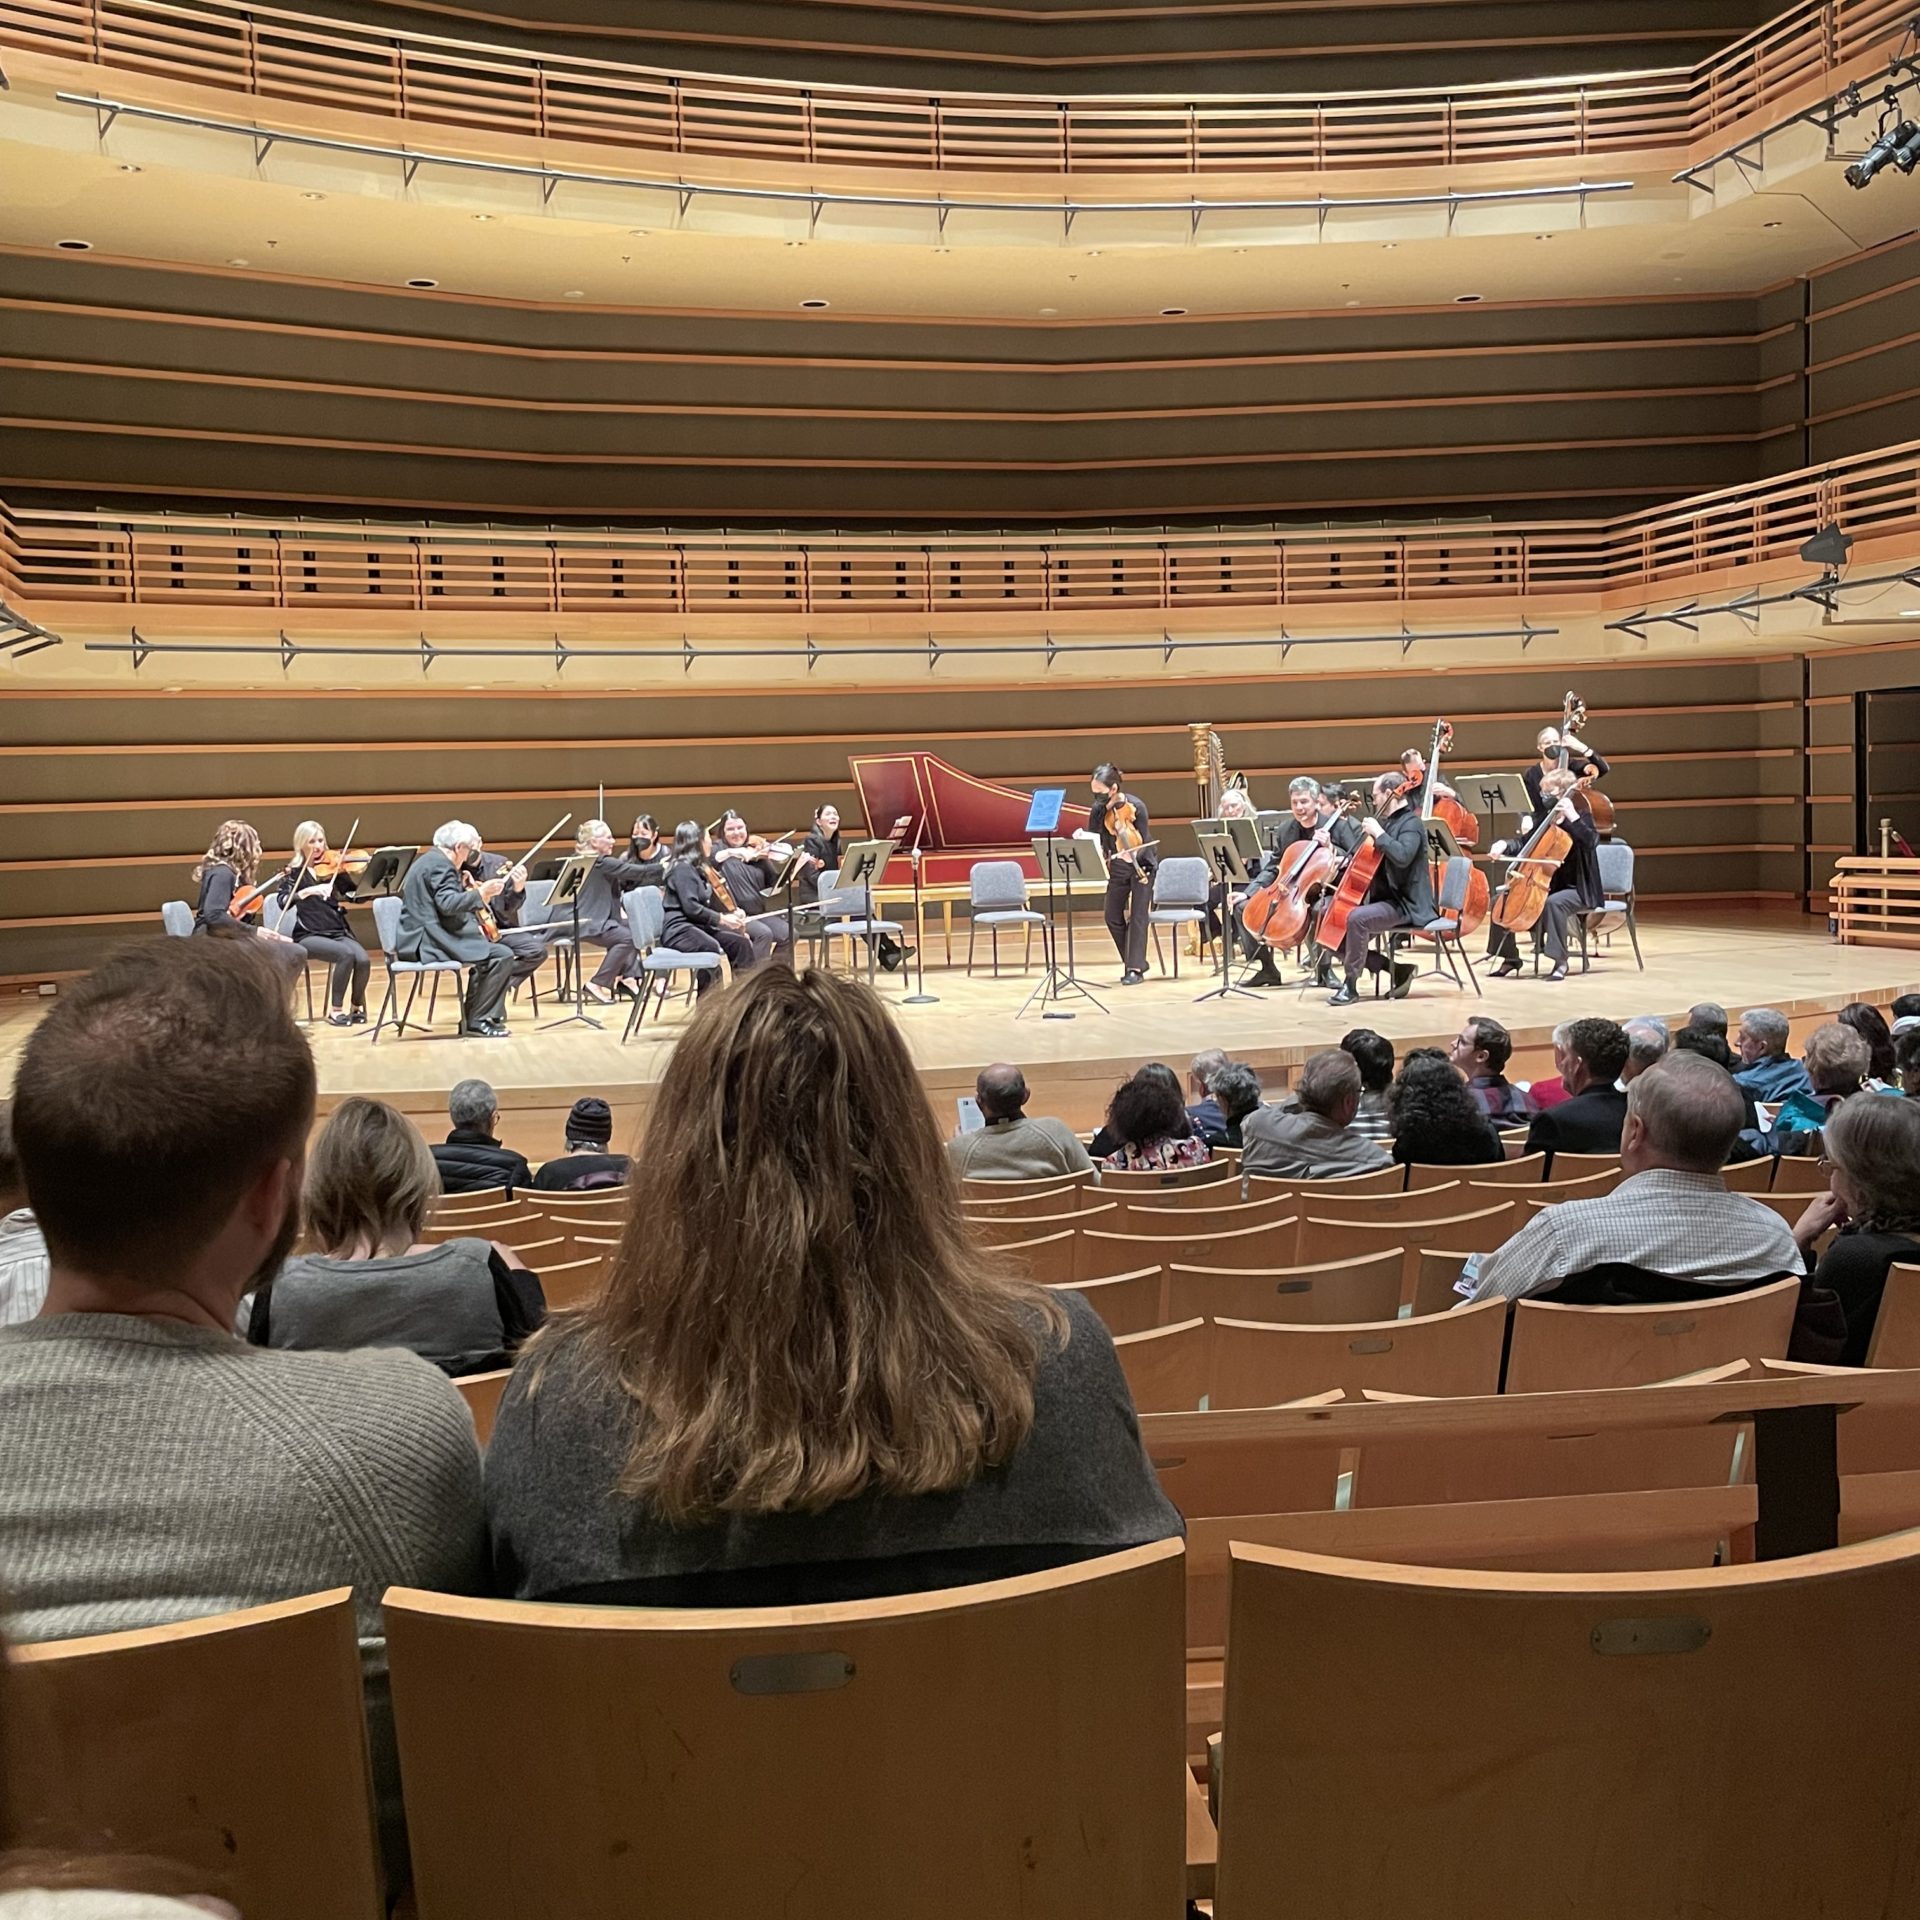 Max Richter Concert in the Auditorium